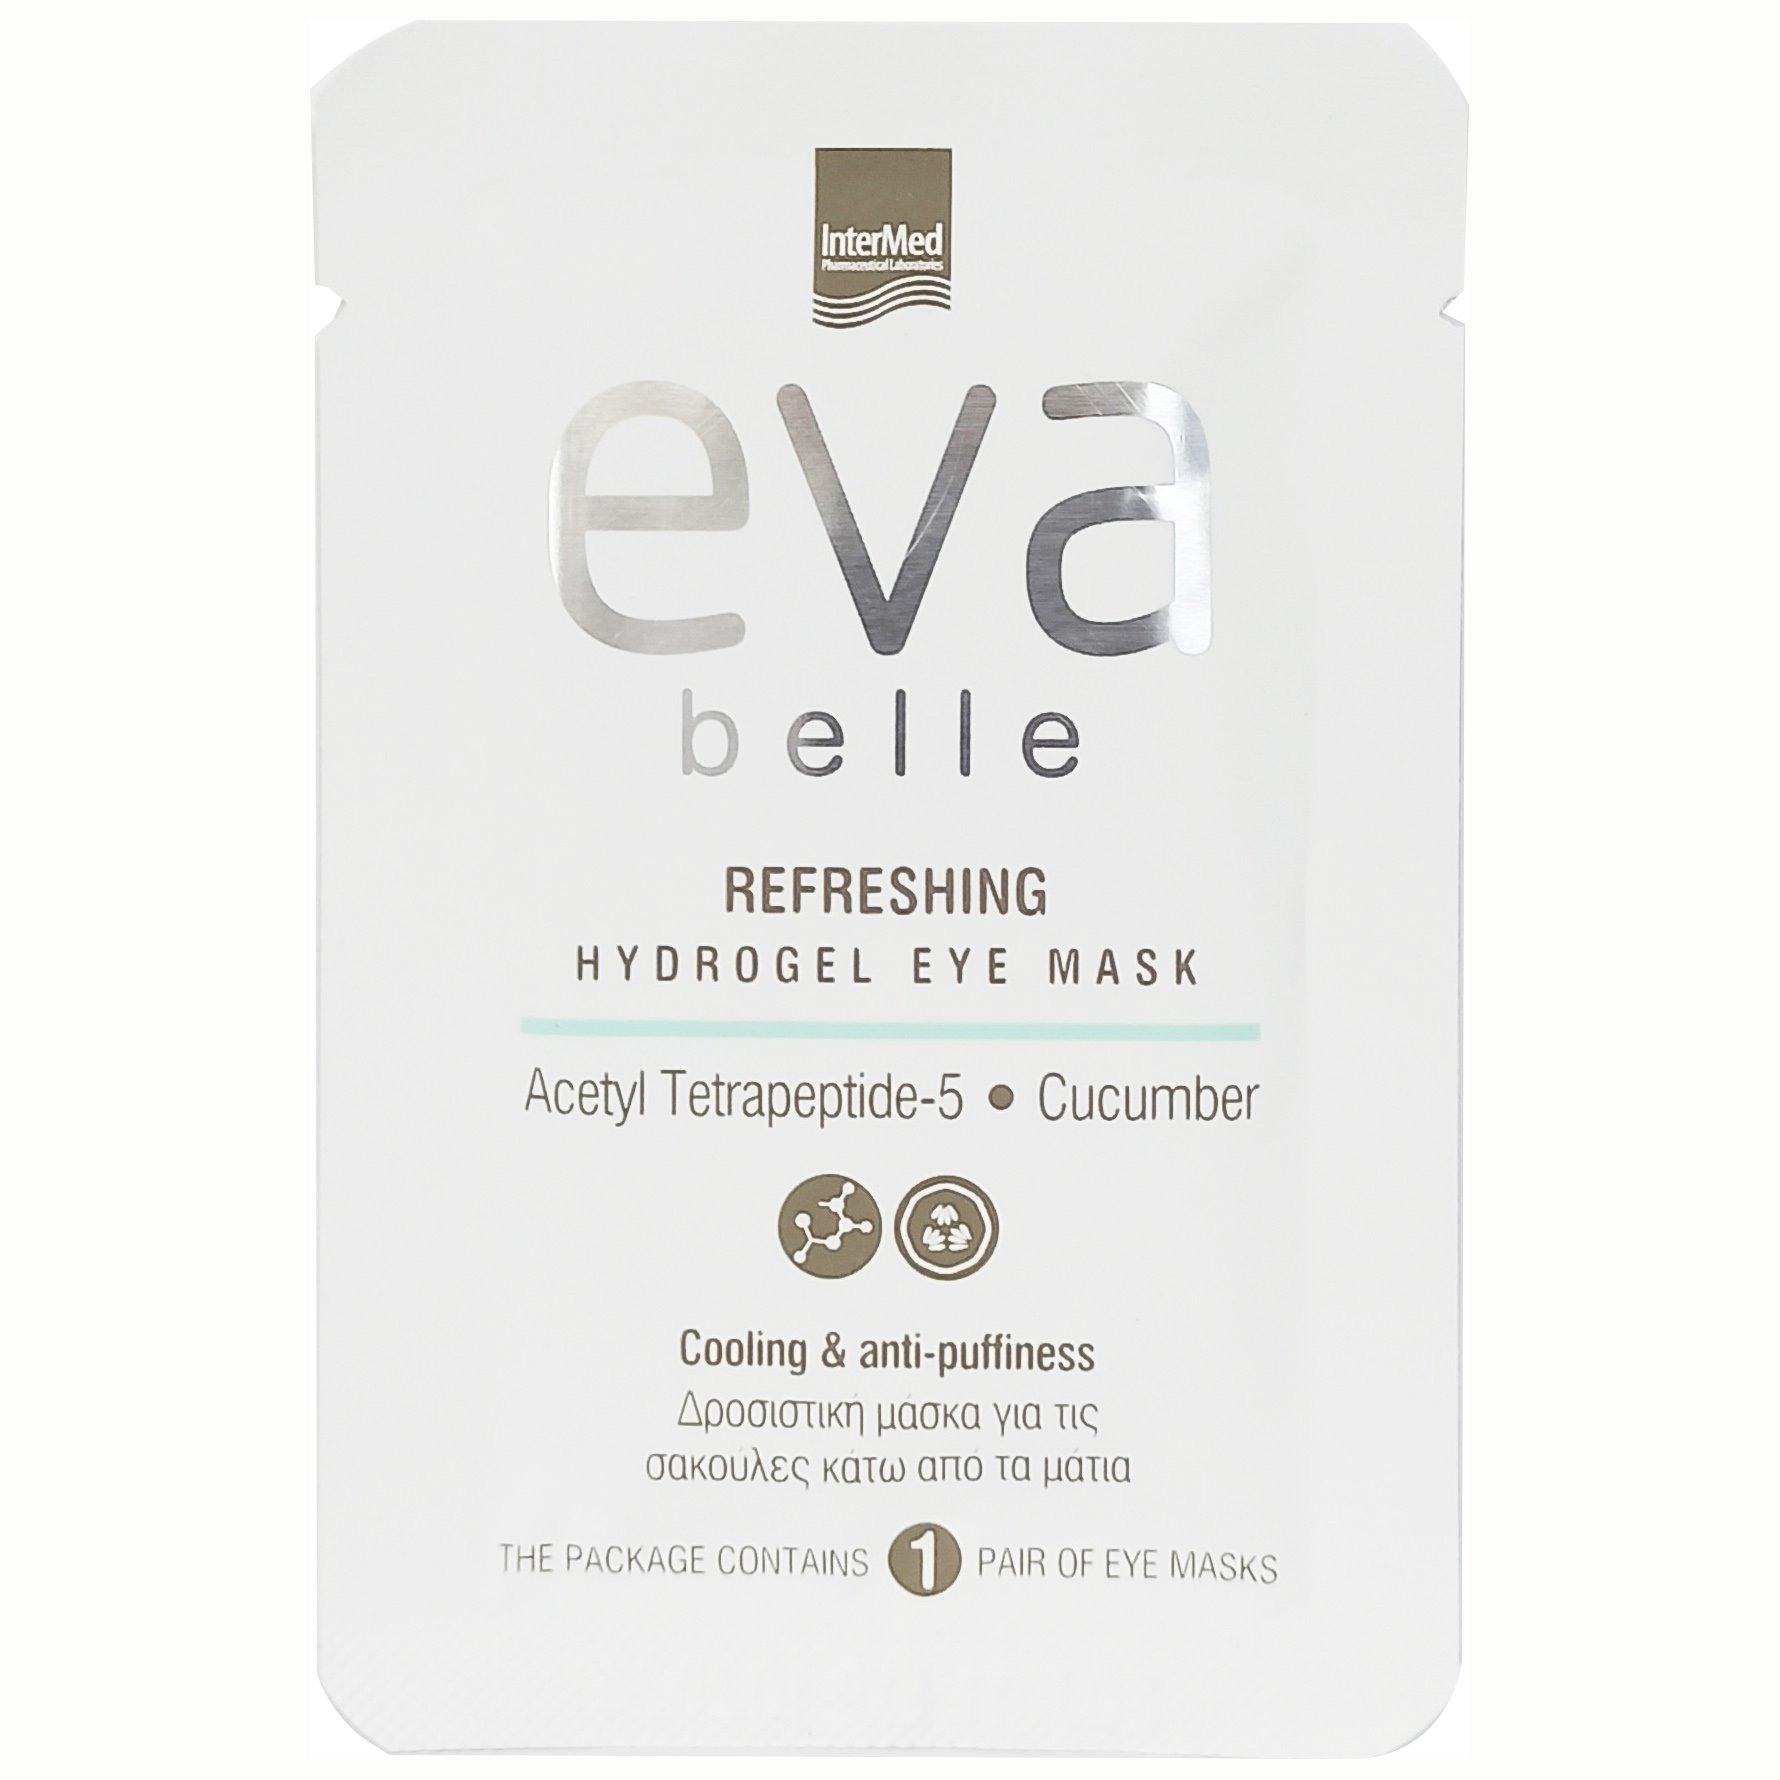 Eva Belle Refreshing Hydrogel Eye Mask Δροσιστική Μάσκα Υδρογέλης για τις Σακούλες Κάτω από τα Μάτια 3g